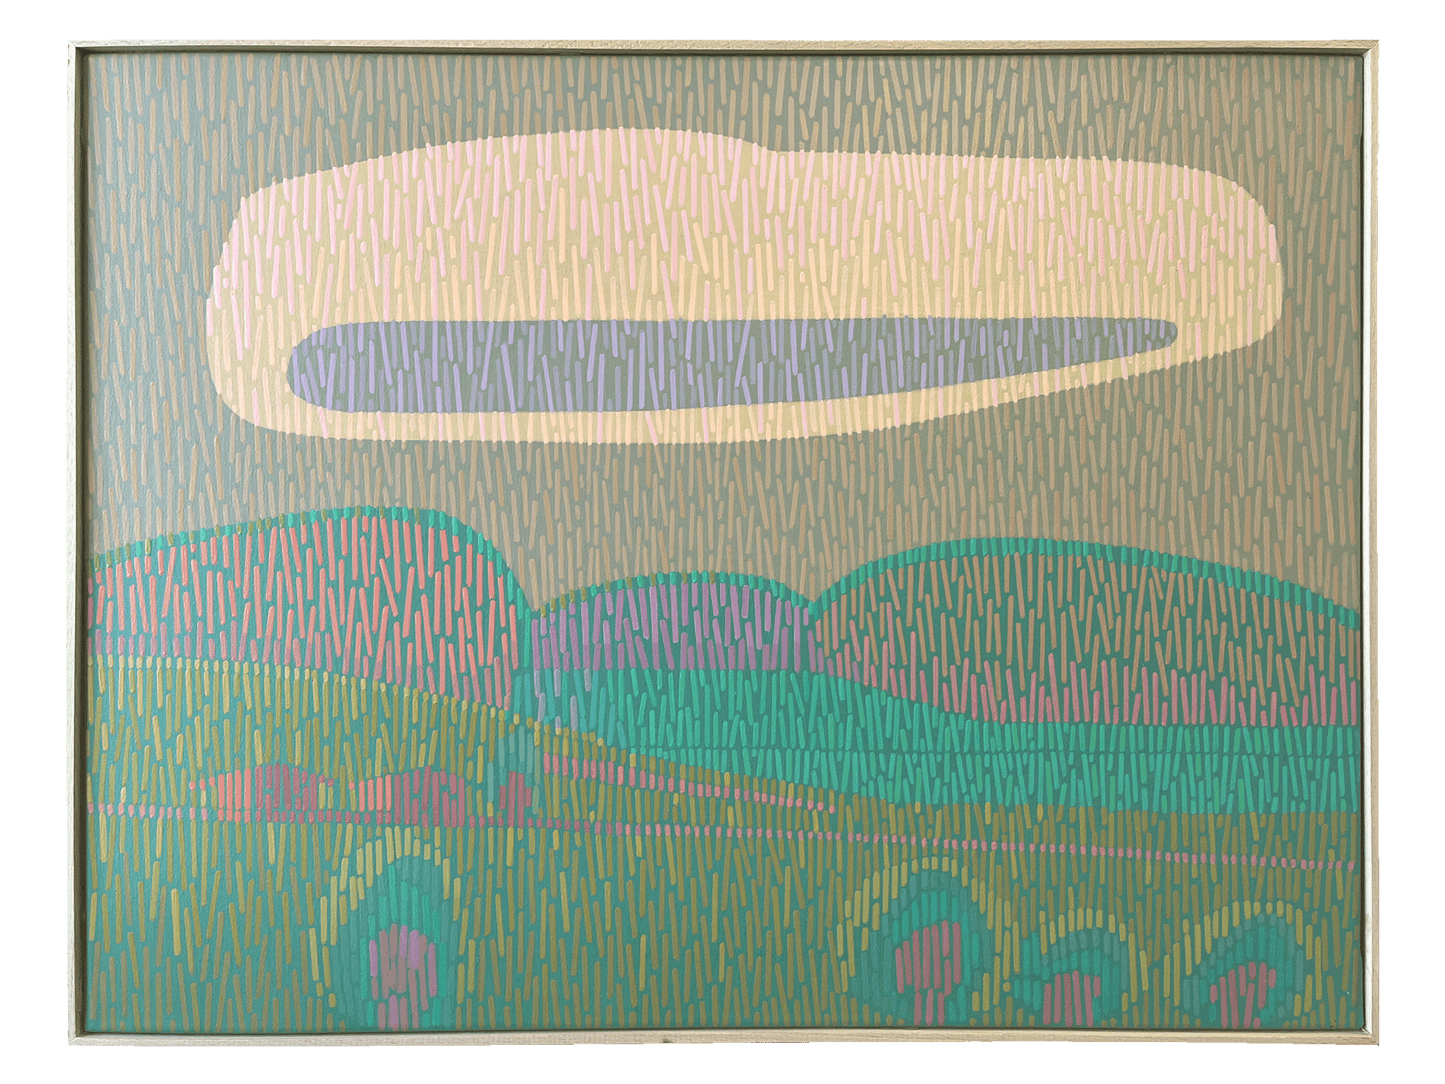 Landschaft Komplementär 4, Unikat, Malerei, handgemaltes Einzelstück, 68 x 52 cm, mit Rahmenleiste